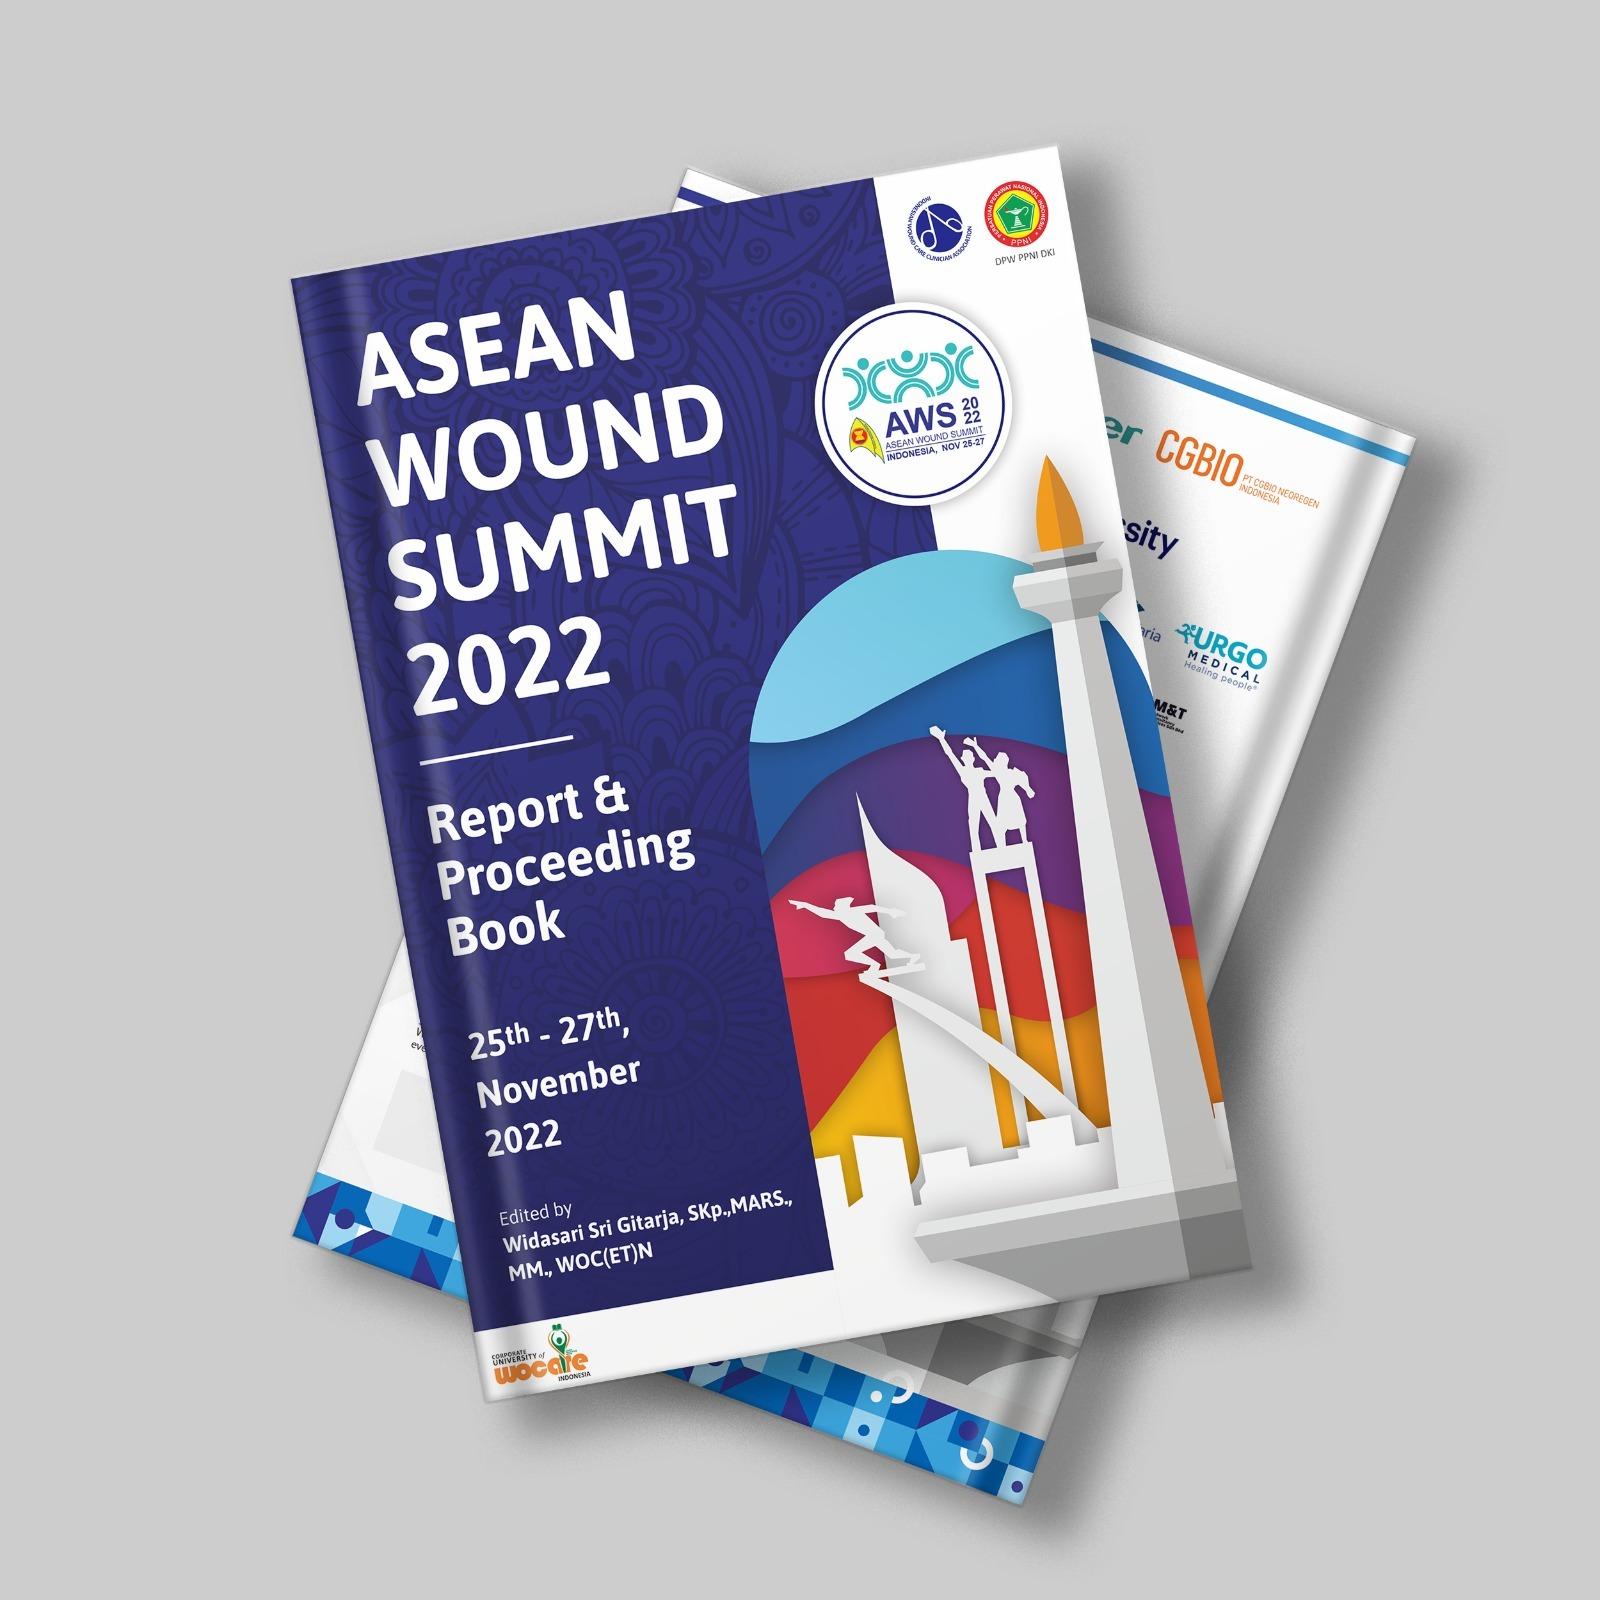 Proceeding Book Asean Wound Summit 2022